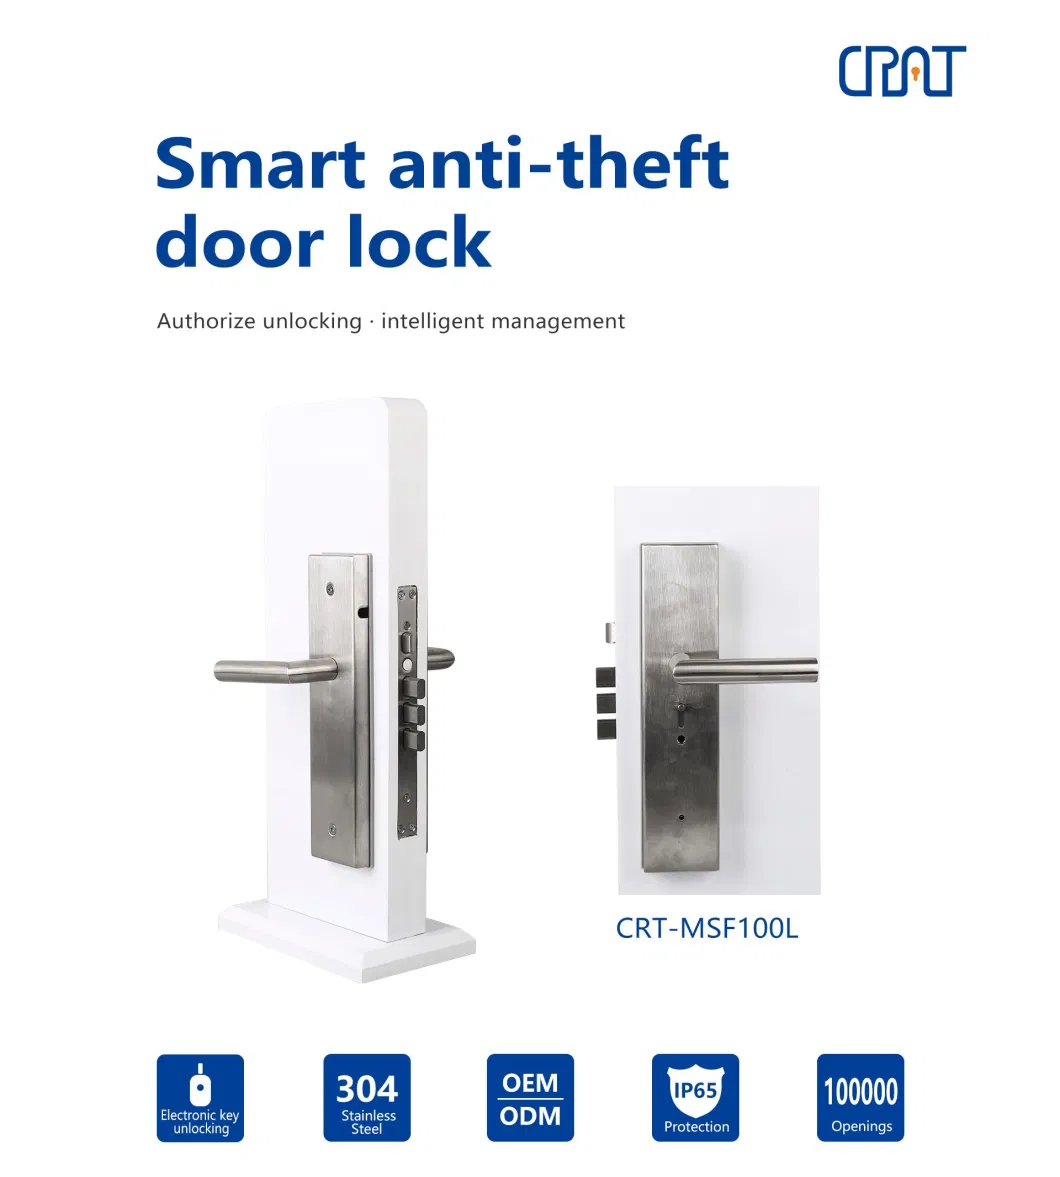 Top Security Key Management Unlock Record Anti-Theft Door Lock for out Door